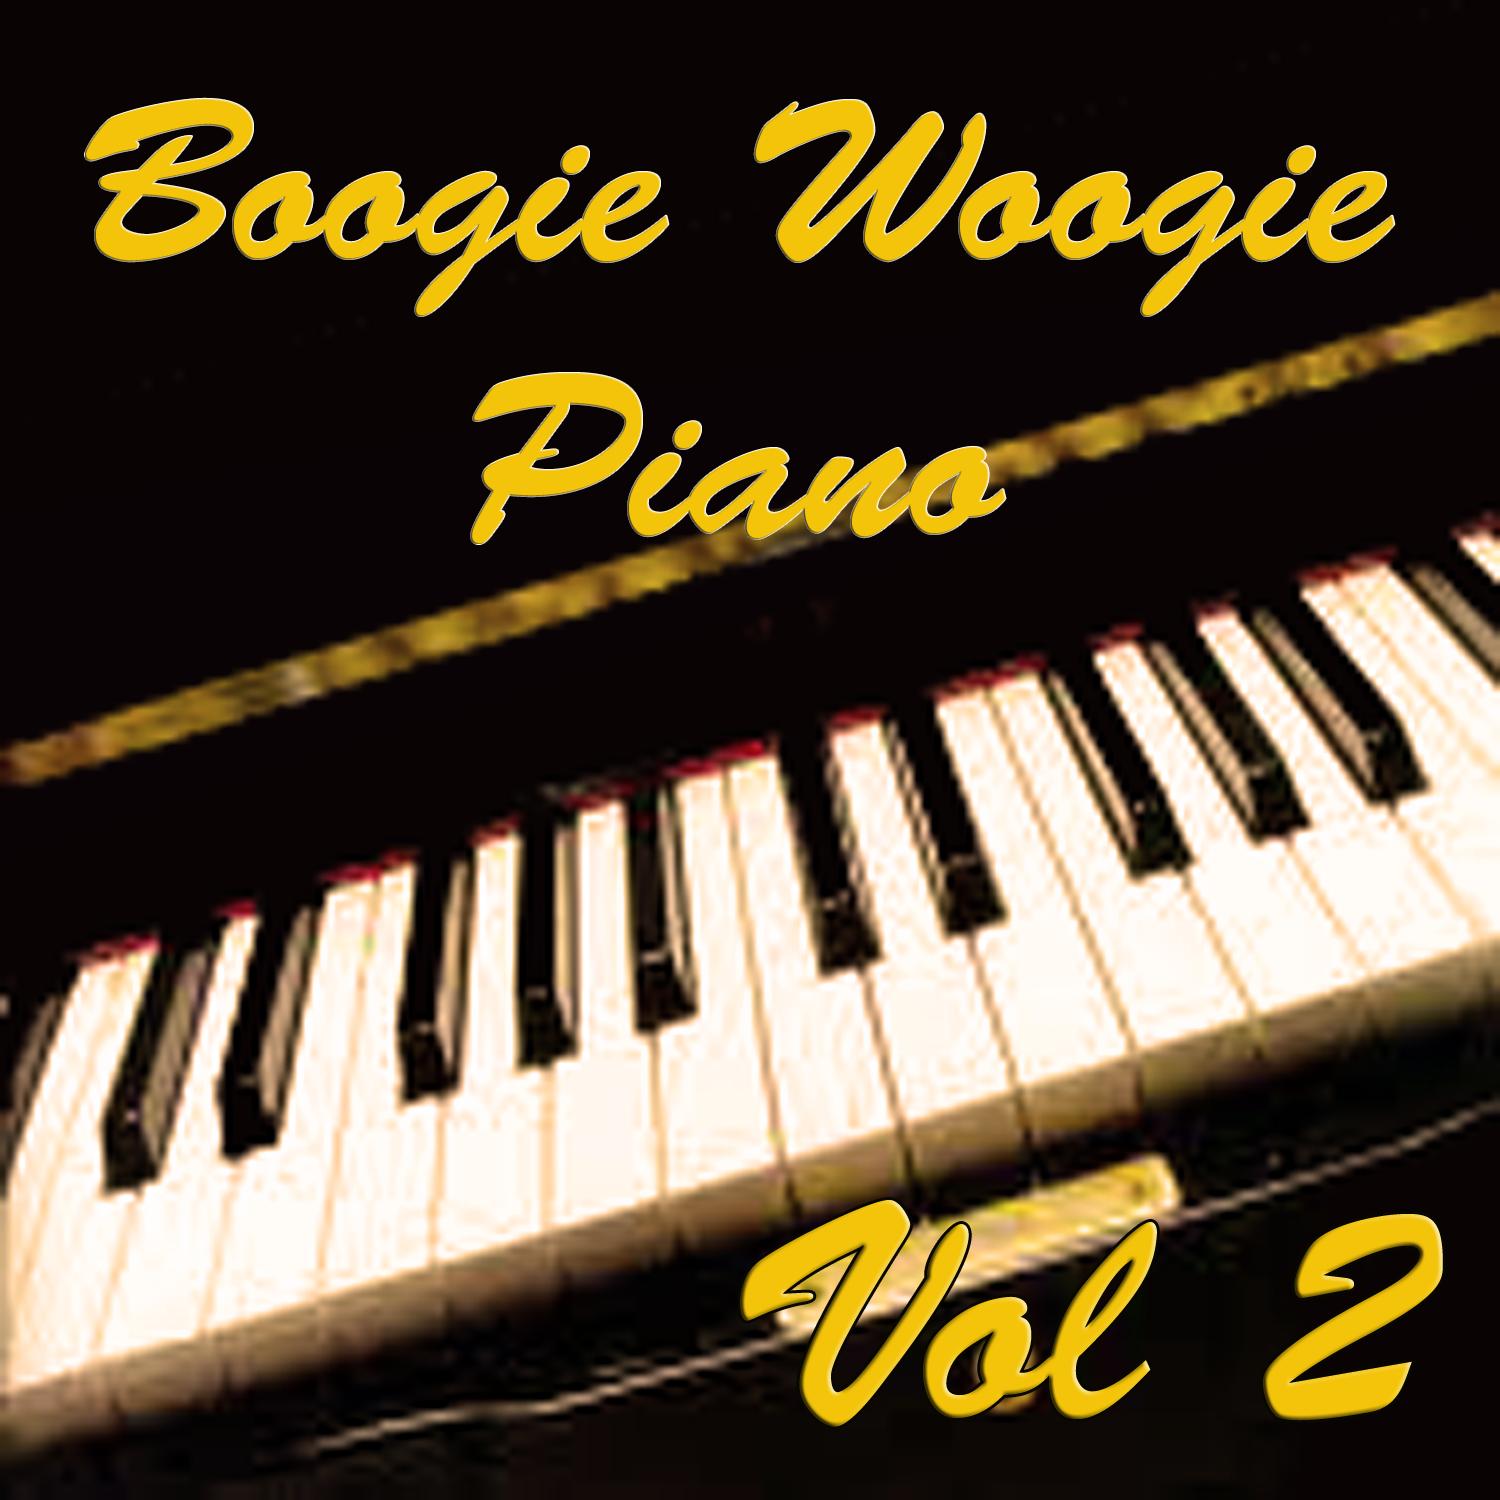 Boogie Woogie Piano Vol 2